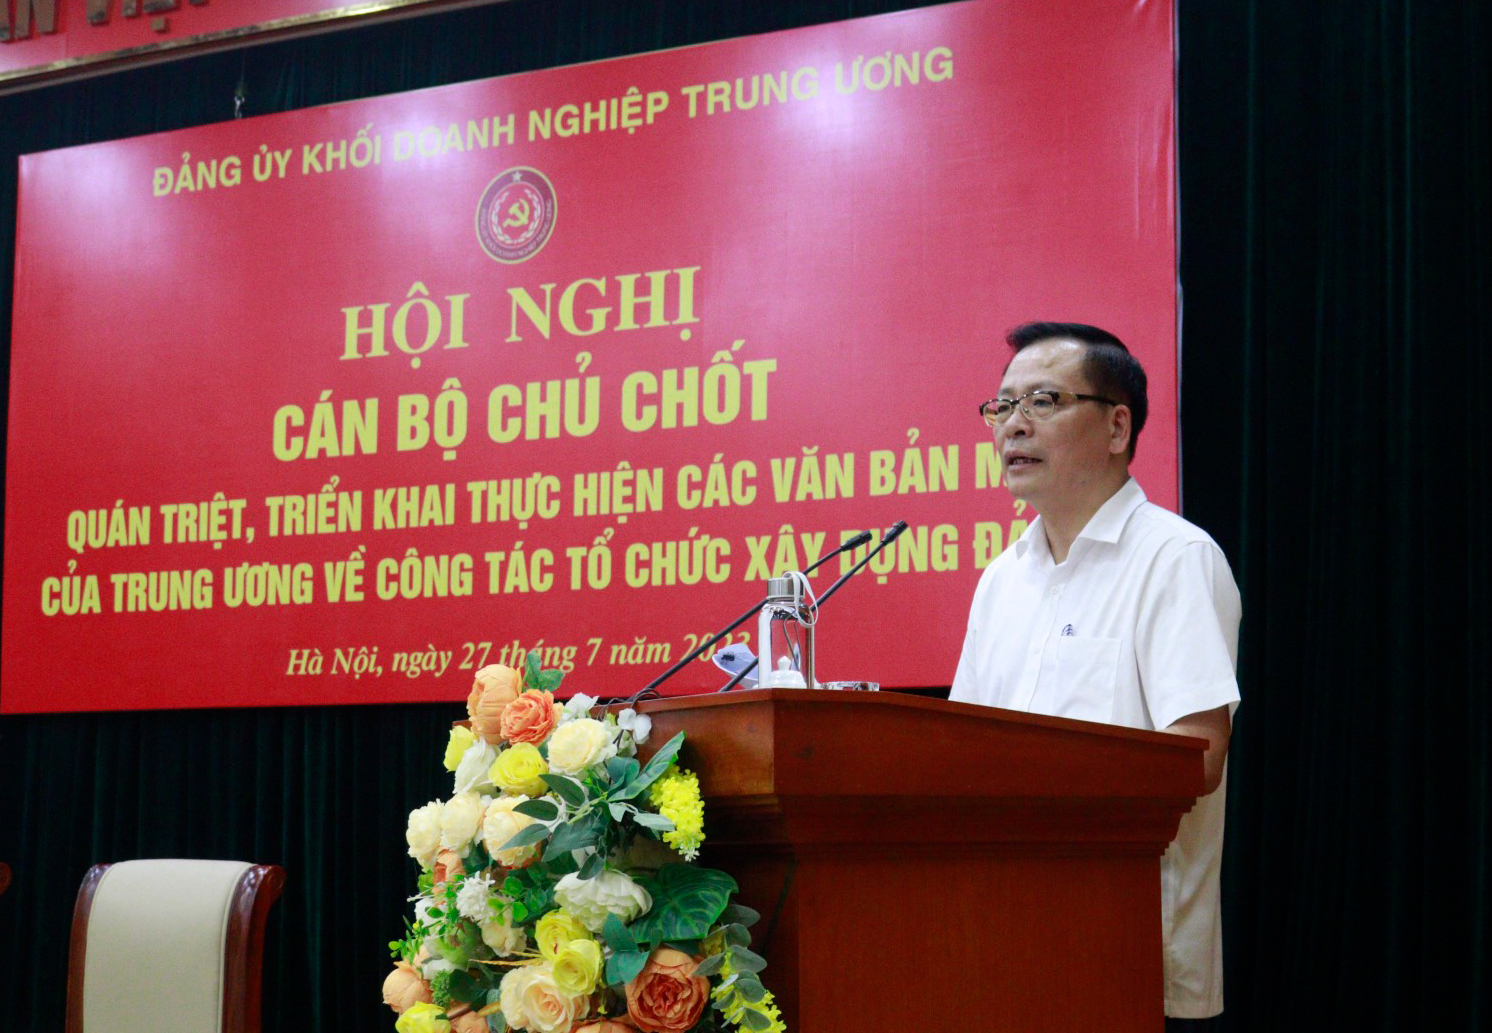 Đồng chí Chu Đình Động - Trưởng Ban Tổ chức Đảng uỷ Khối Doanh nghiệp Trung ương phát biểu tại Hội nghị.